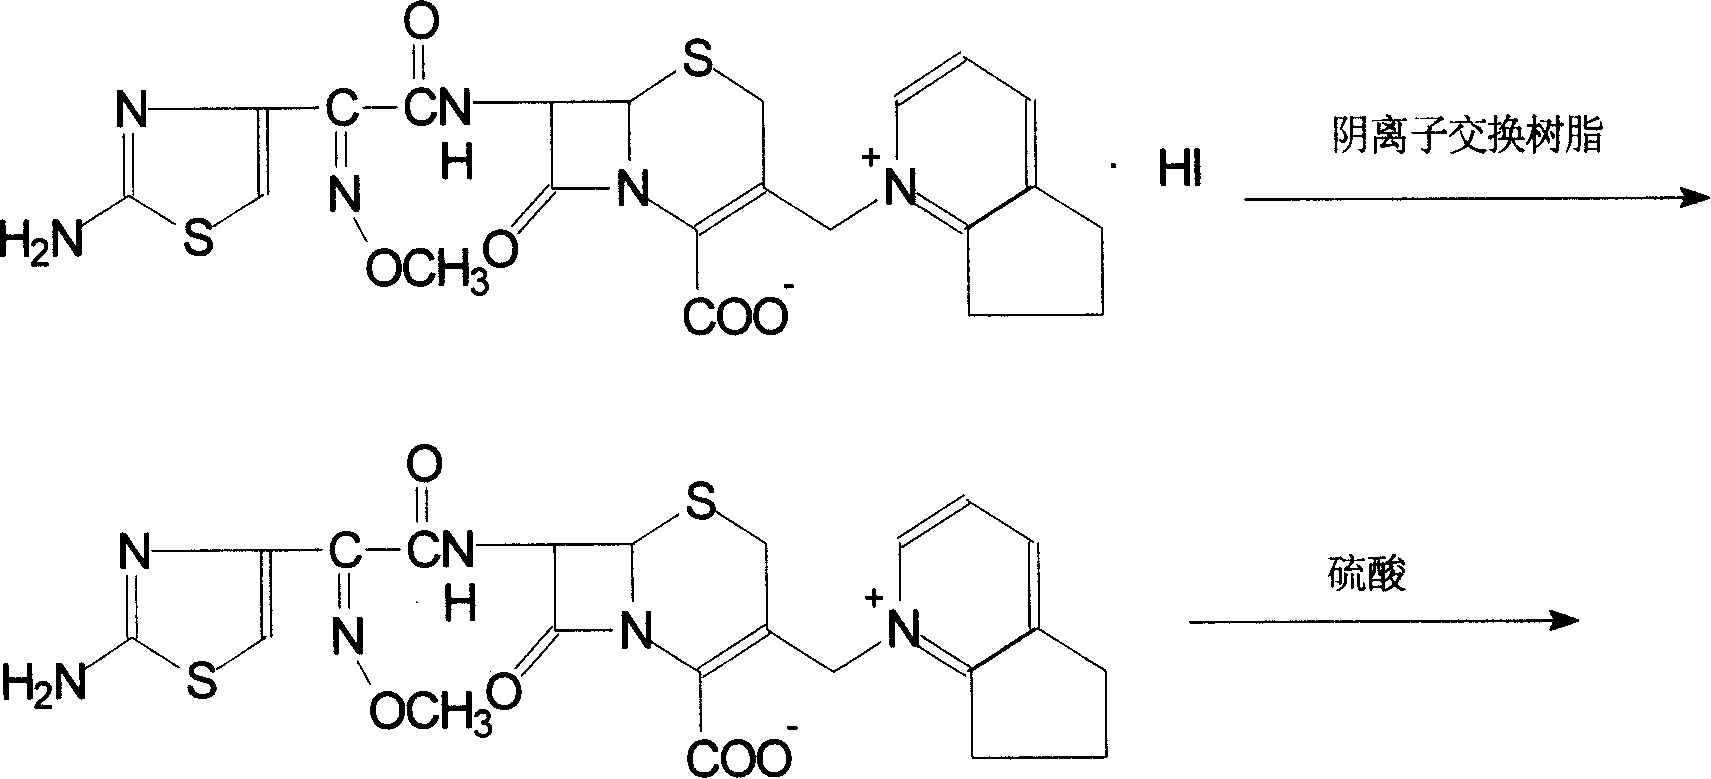 Method of preparing cefpirome sulfate